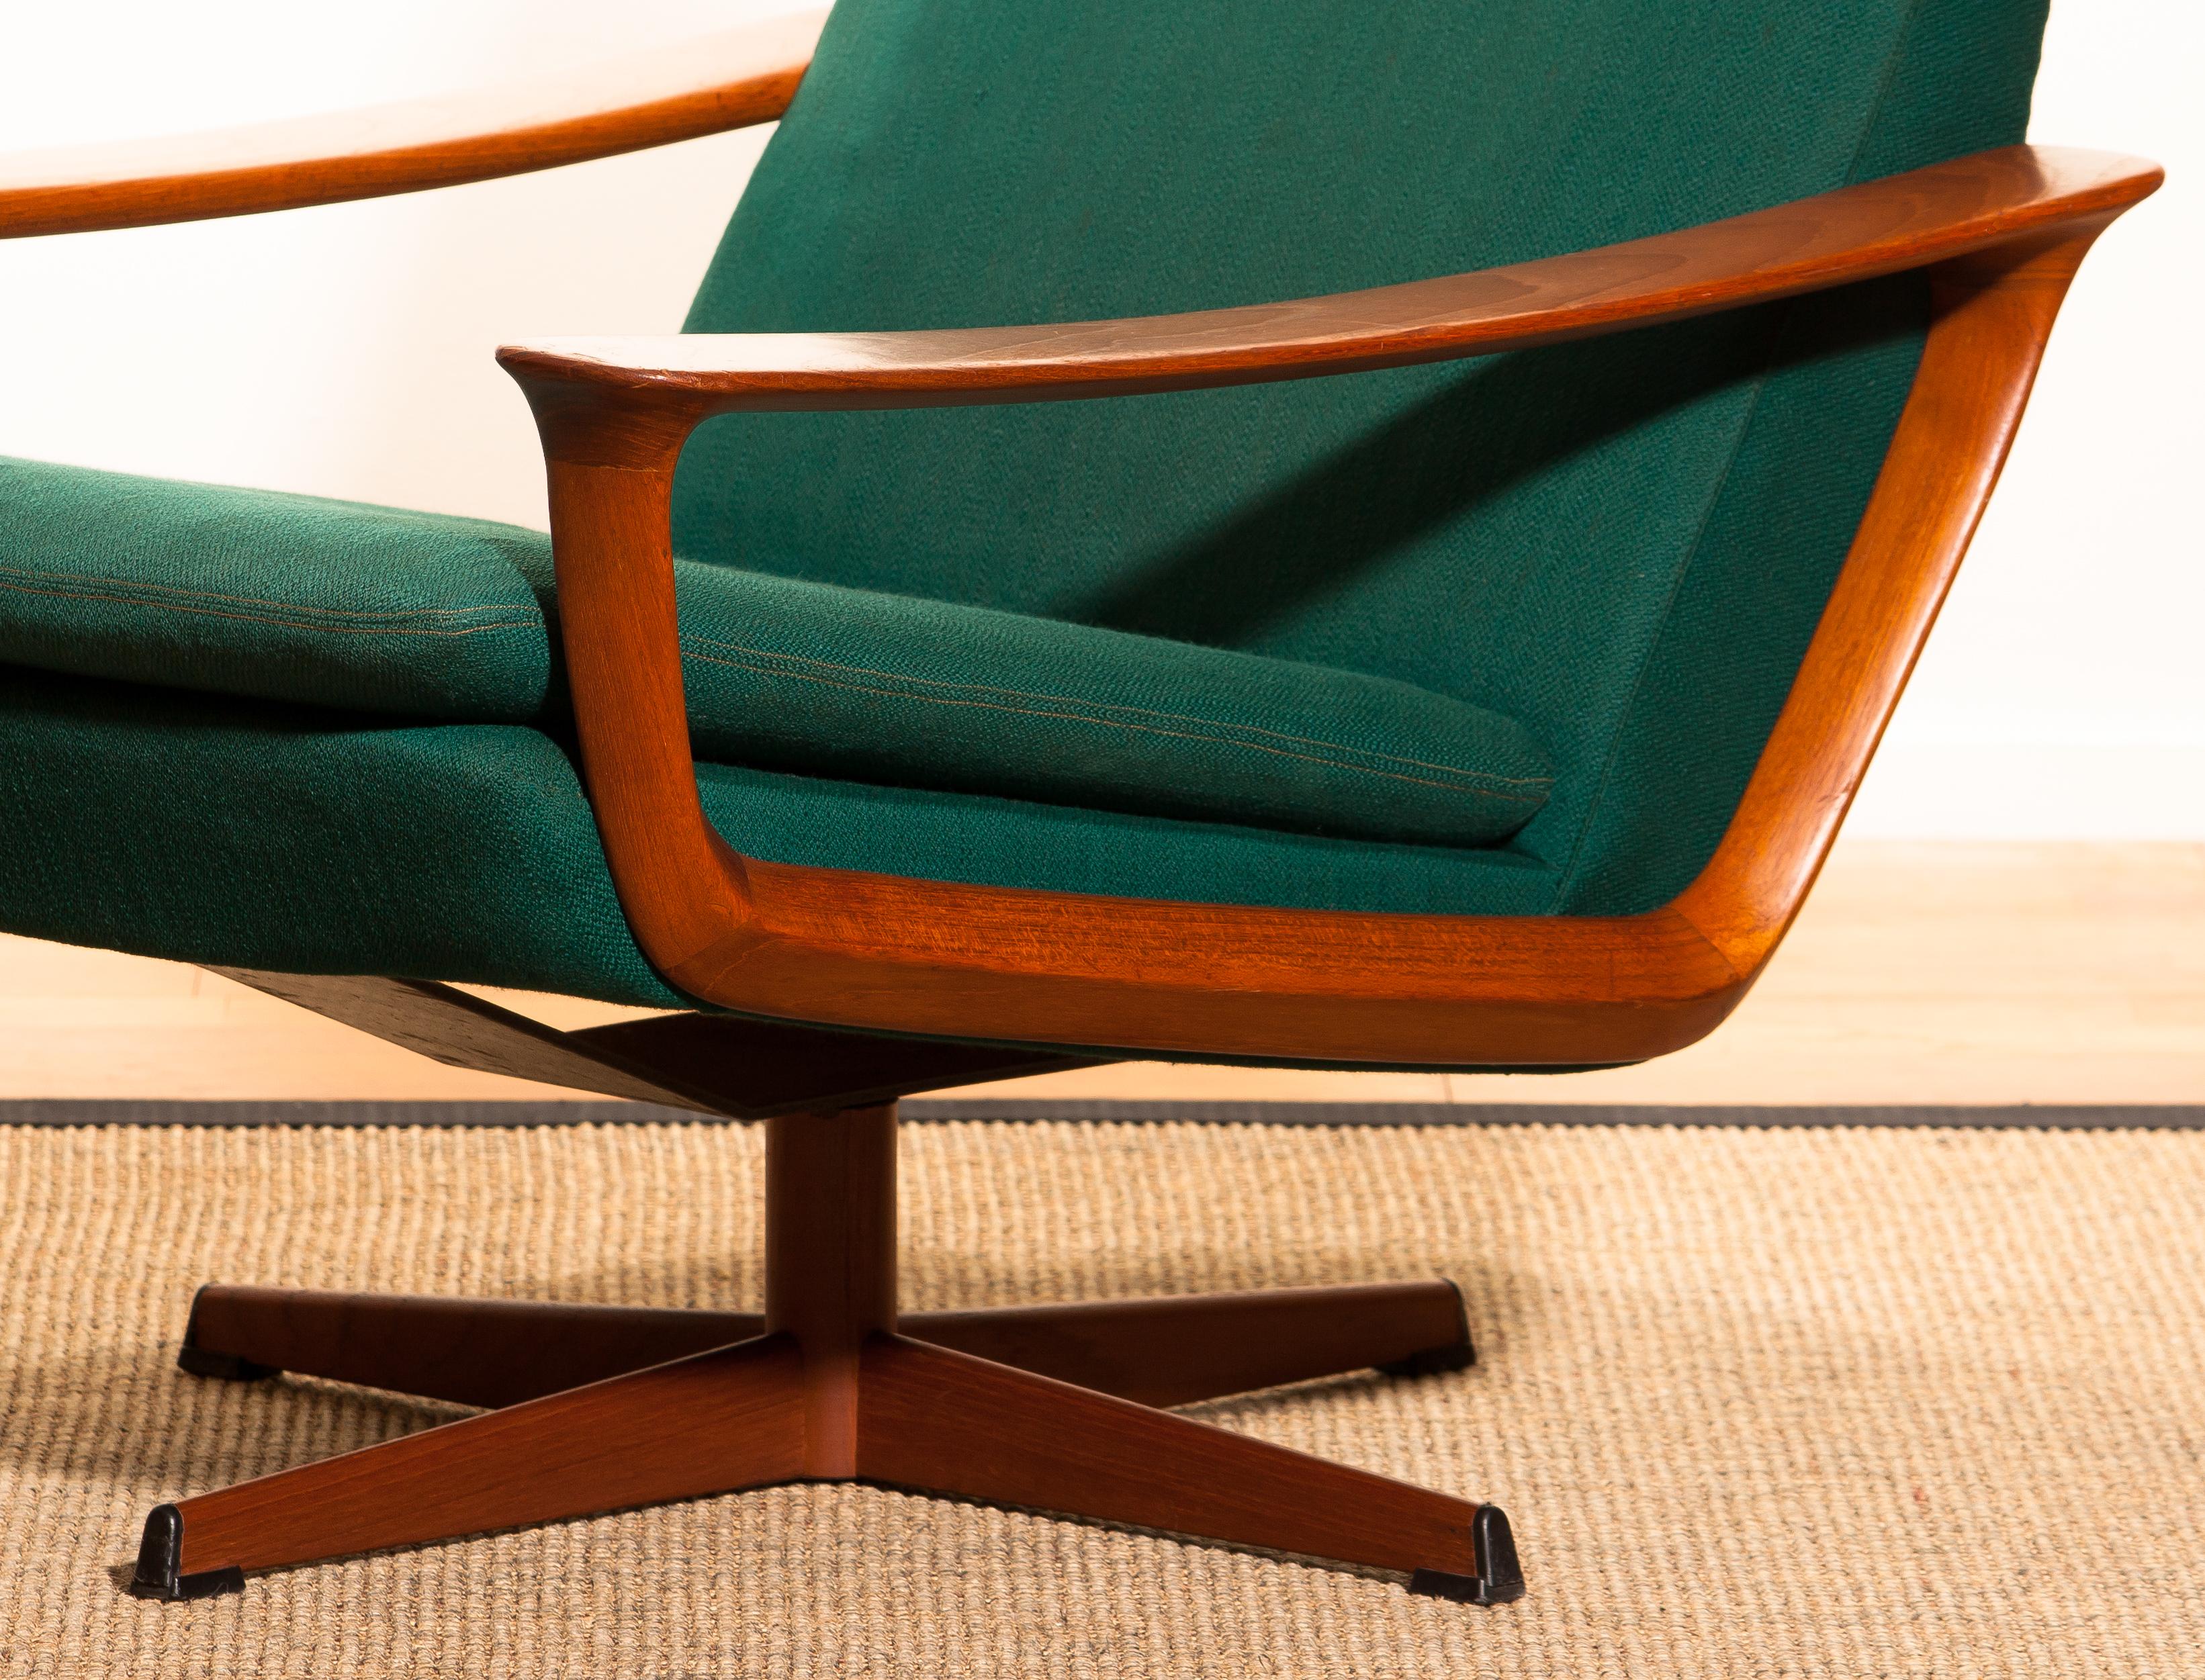 1960s, Teak Swivel Chair by Johannes Andersen for Trensum, Denmark 1